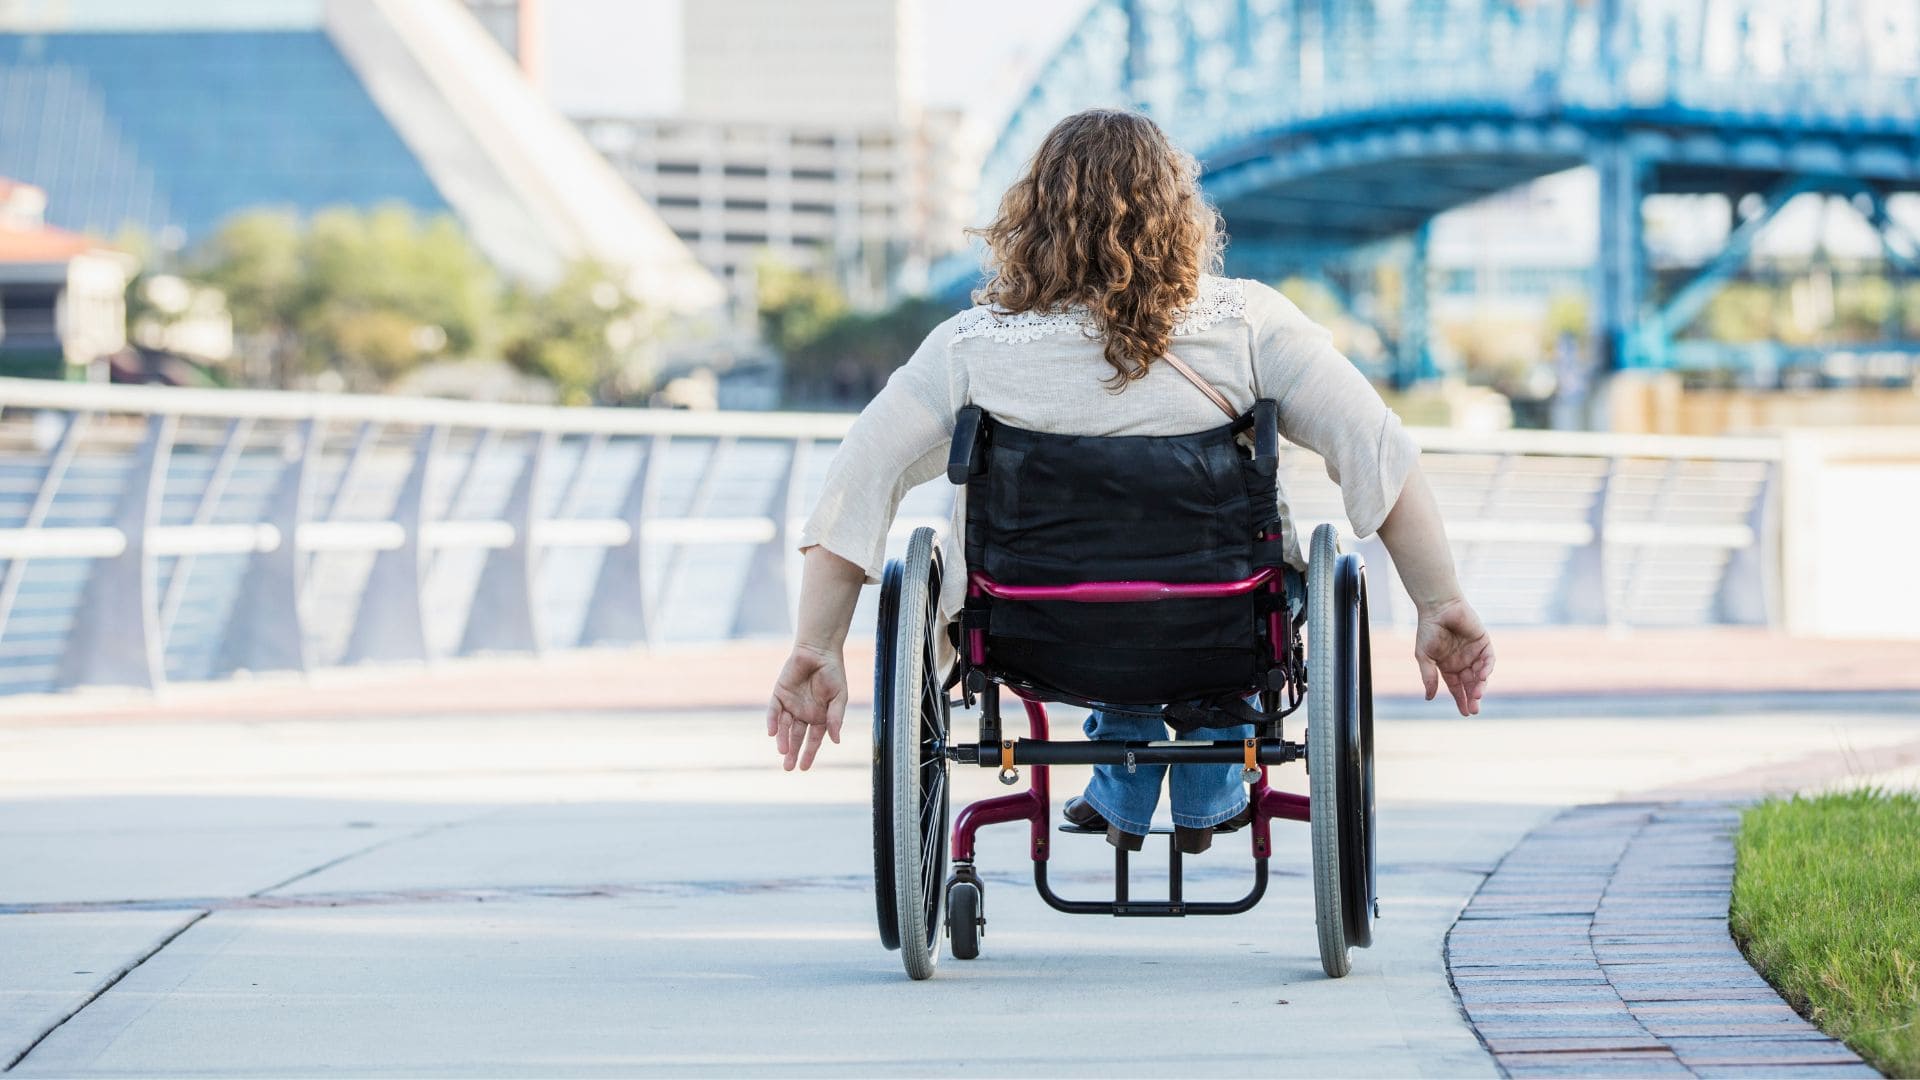 Los destinos que apuestan por la accesibilidad de las personas con discapacidad están de moda